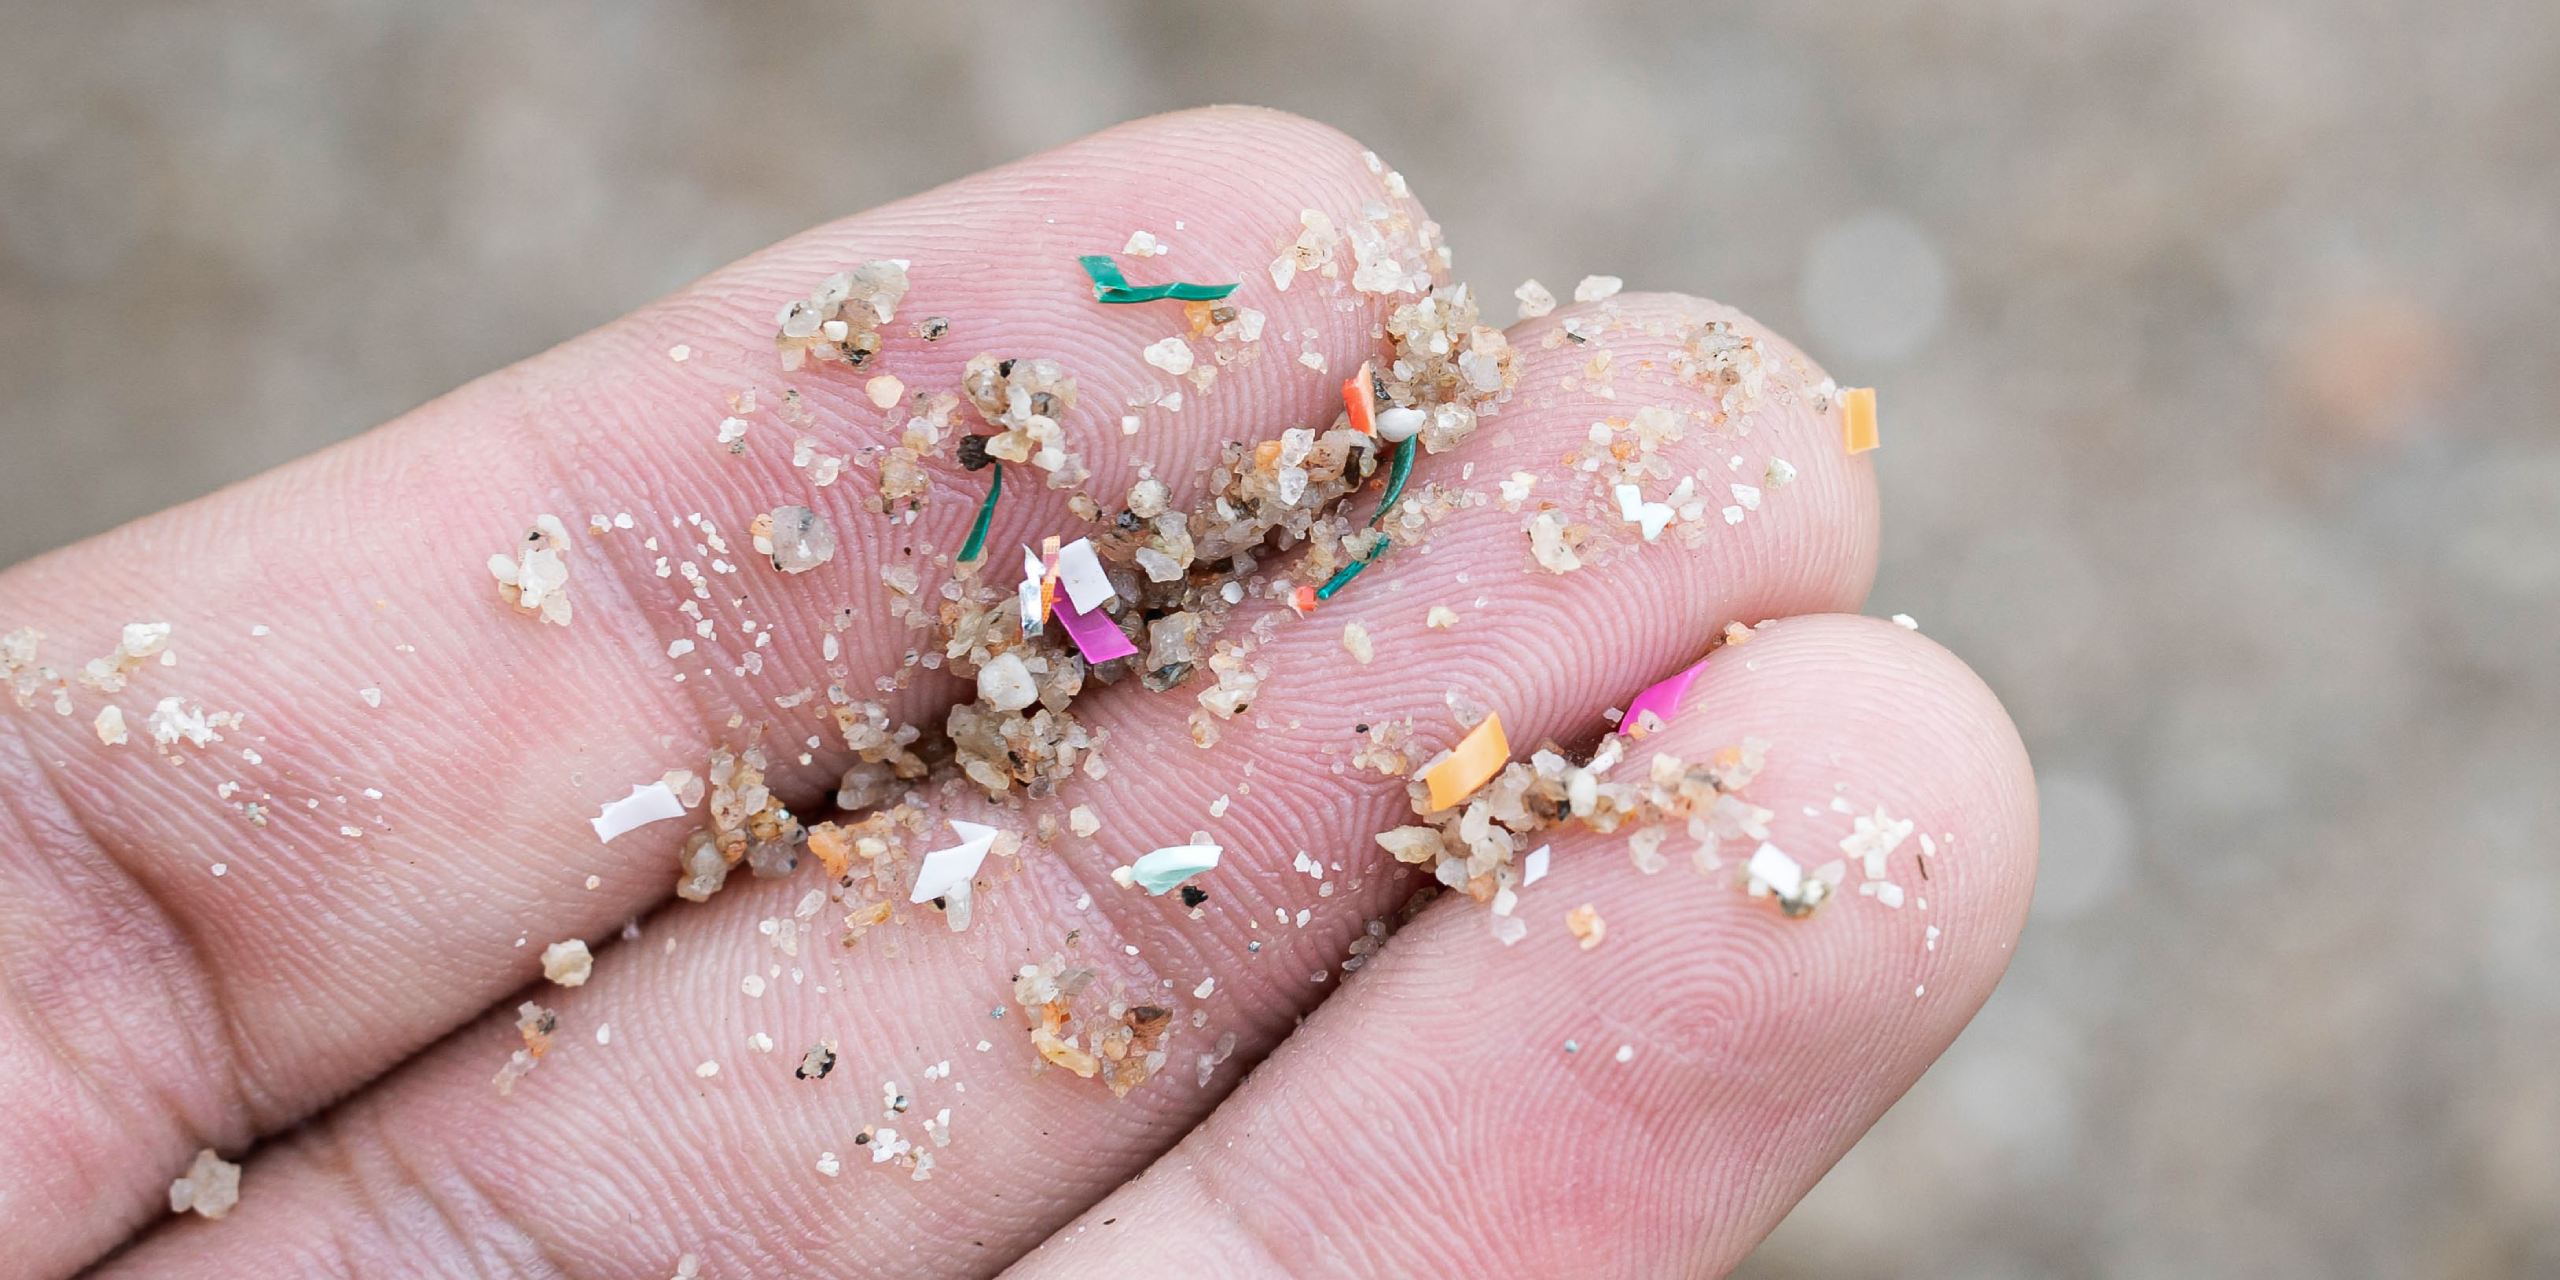 Mikroplastikler ve Çevreye Etkileri: Ne Yapabiliriz?